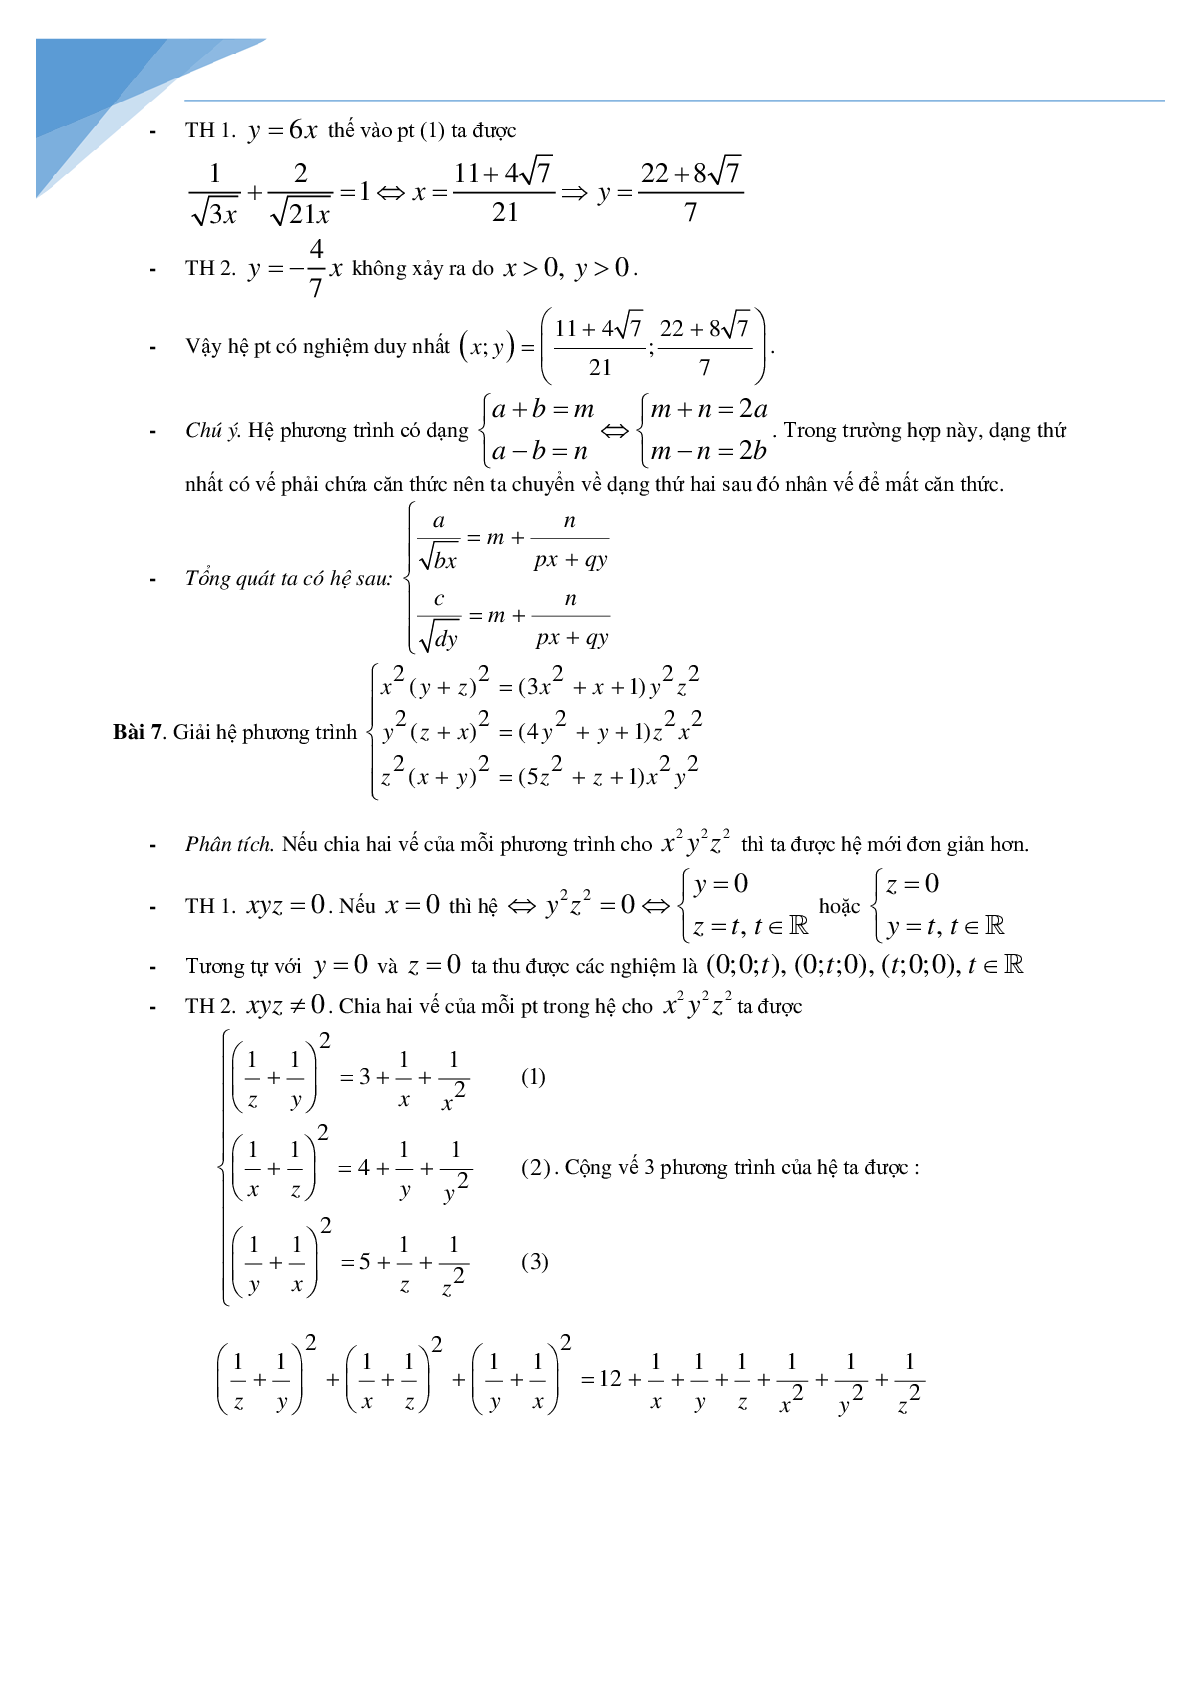 Chuyên đề hệ phương trình bồi dưỡng học sinh giỏi toán (trang 8)